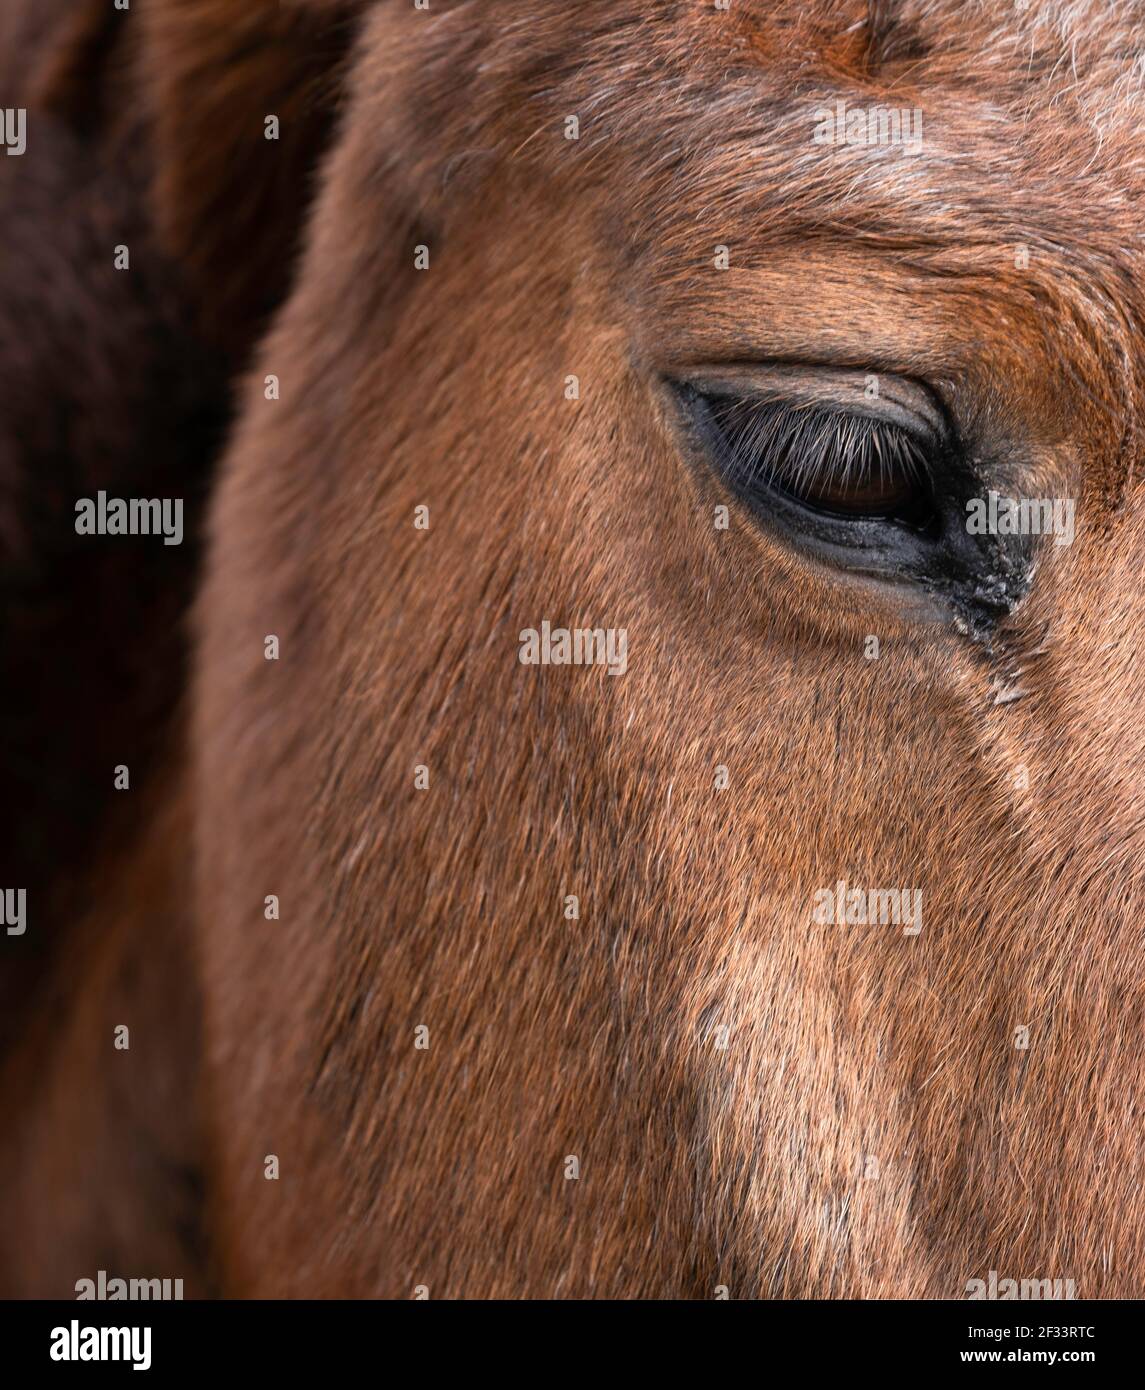 Rechte Seite des Kopfes und Halses eines braunen Pferdes. Konzentrieren Sie sich auf die Augenlider. Enge Schärfentiefe, vertikales Bild. Speicherplatz kopieren Stockfoto